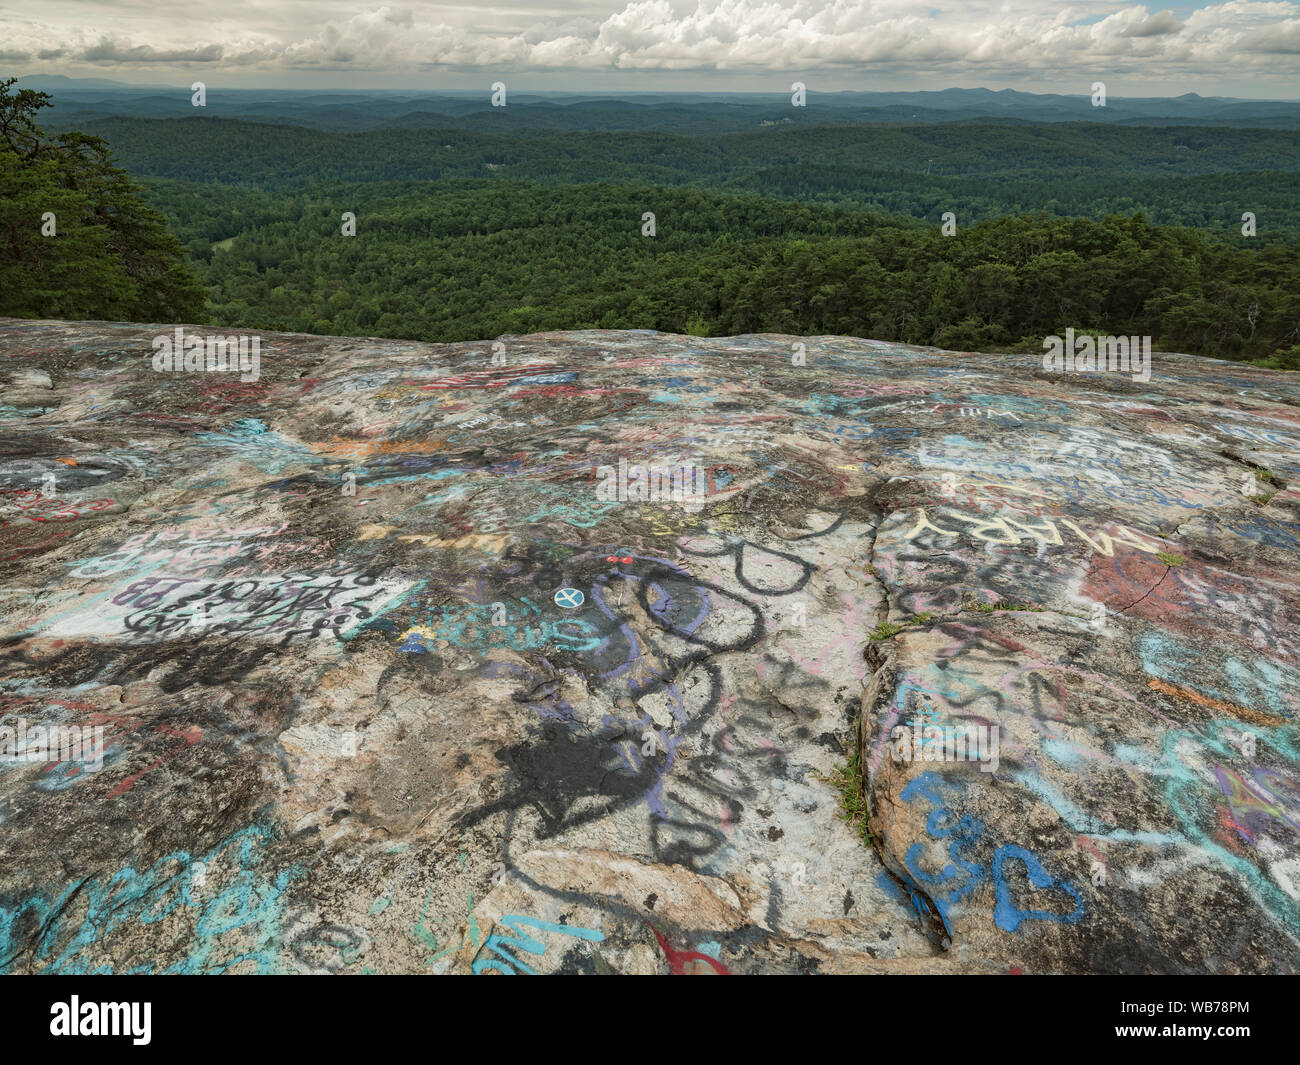 Graffiti bedeckt kahlen Felsen Erbe zu erhalten. Teil des Berges Brücke Wilderness Area in South Carolina. Ein beliebter Ort für Graffiti und malerischen v Stockfoto